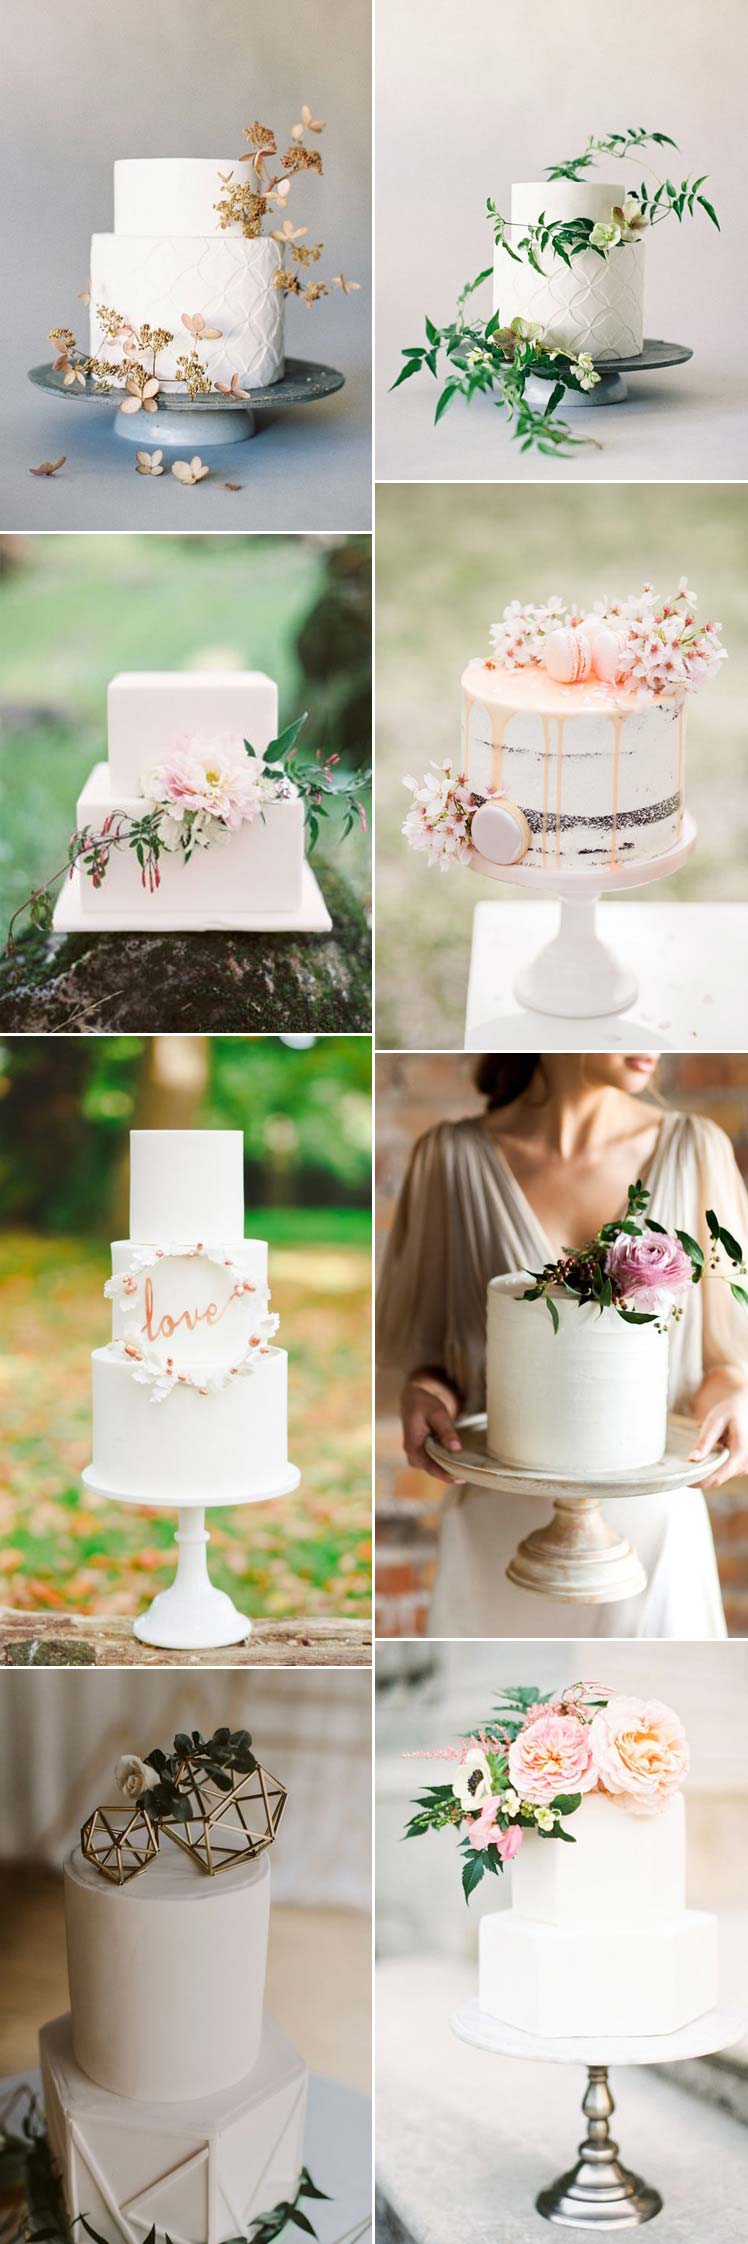 Non traditional white wedding cakes ideas